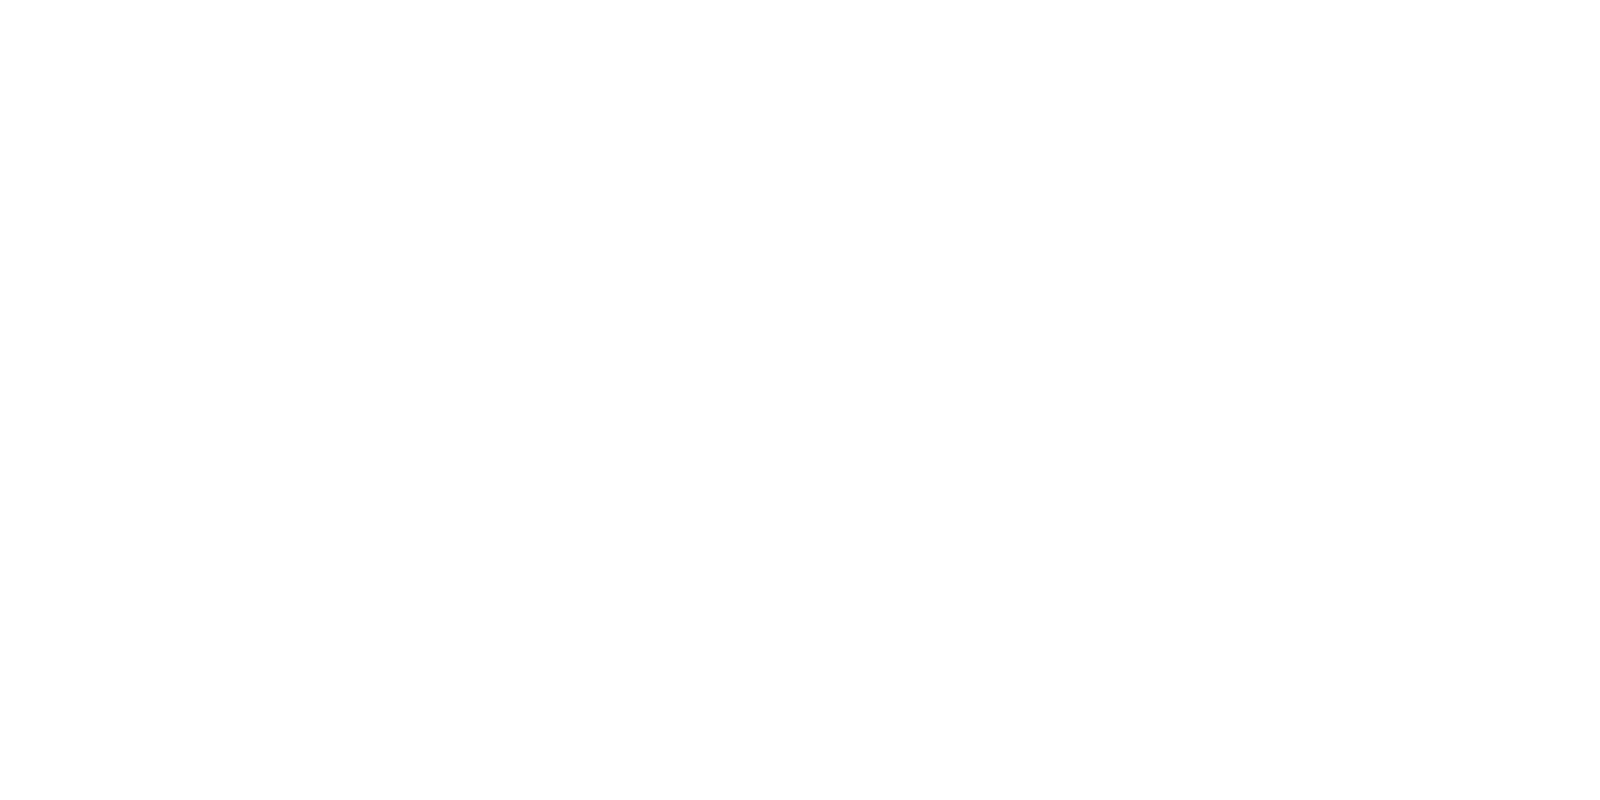 Imagen del logo Bricopersianas